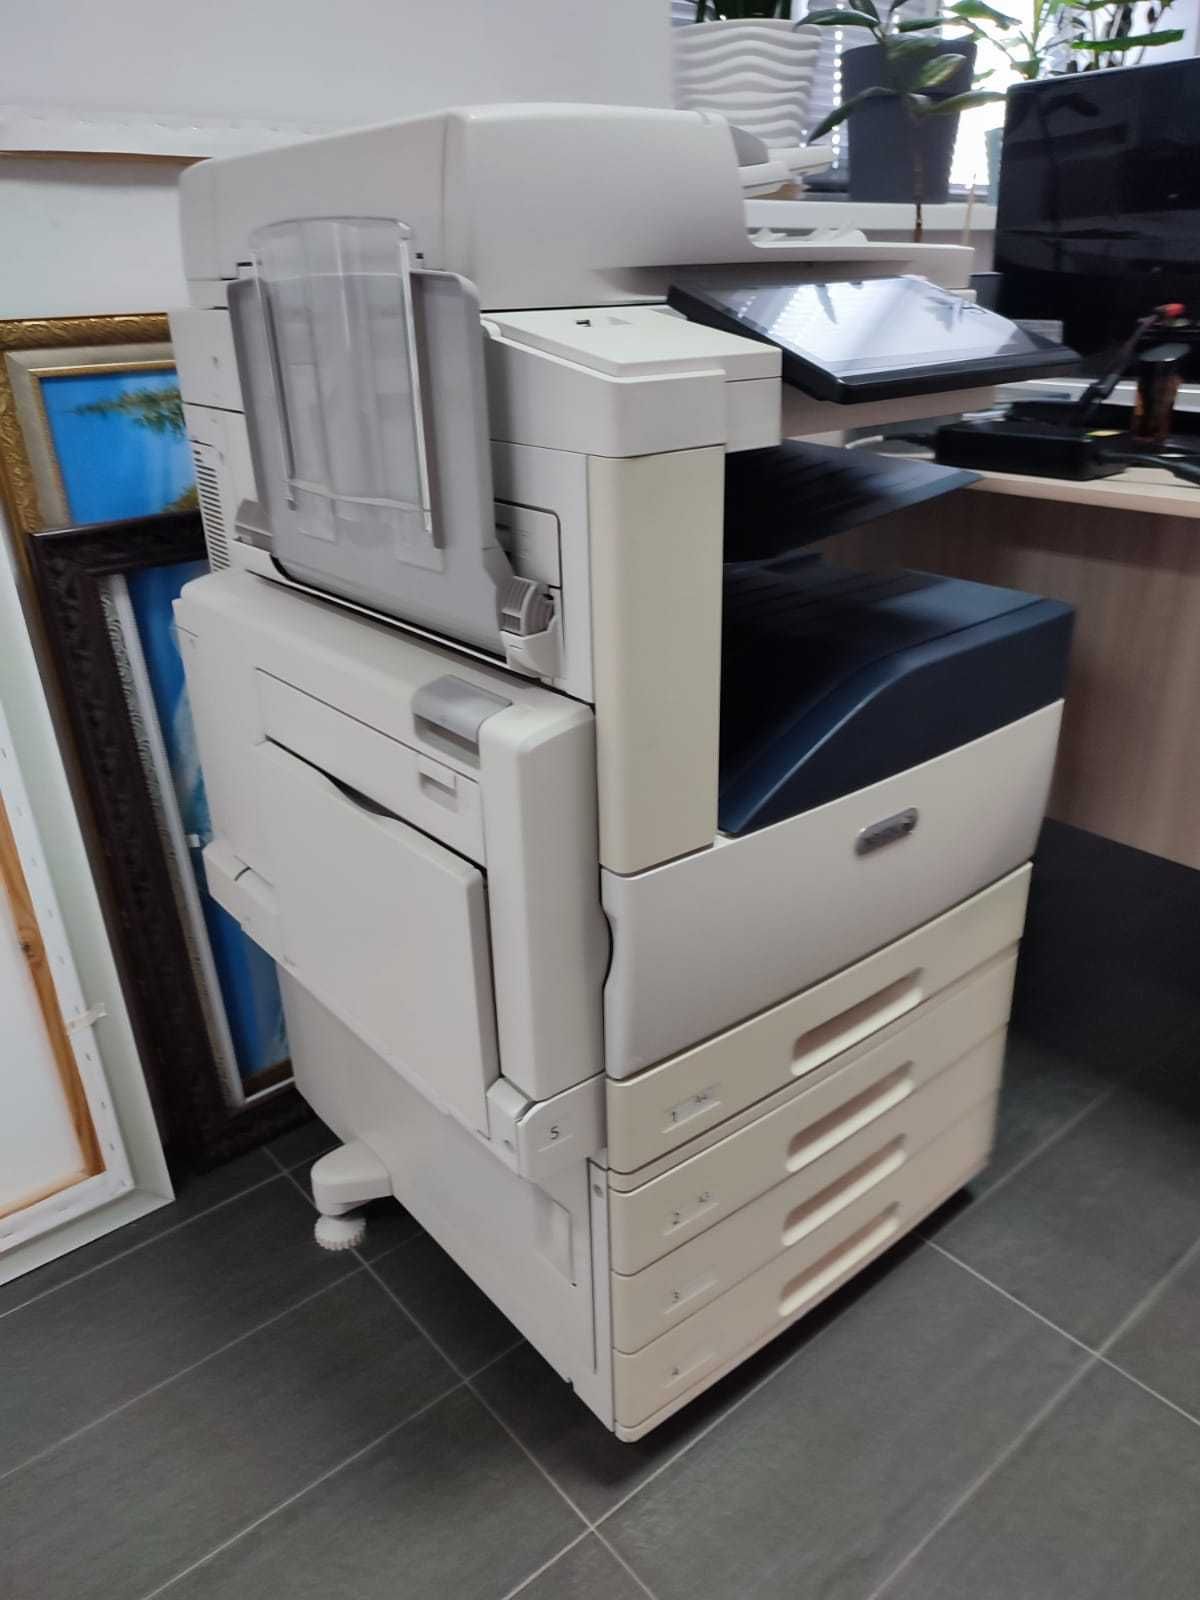 Лазерный принтер цветной Xerox AltaLink C8030